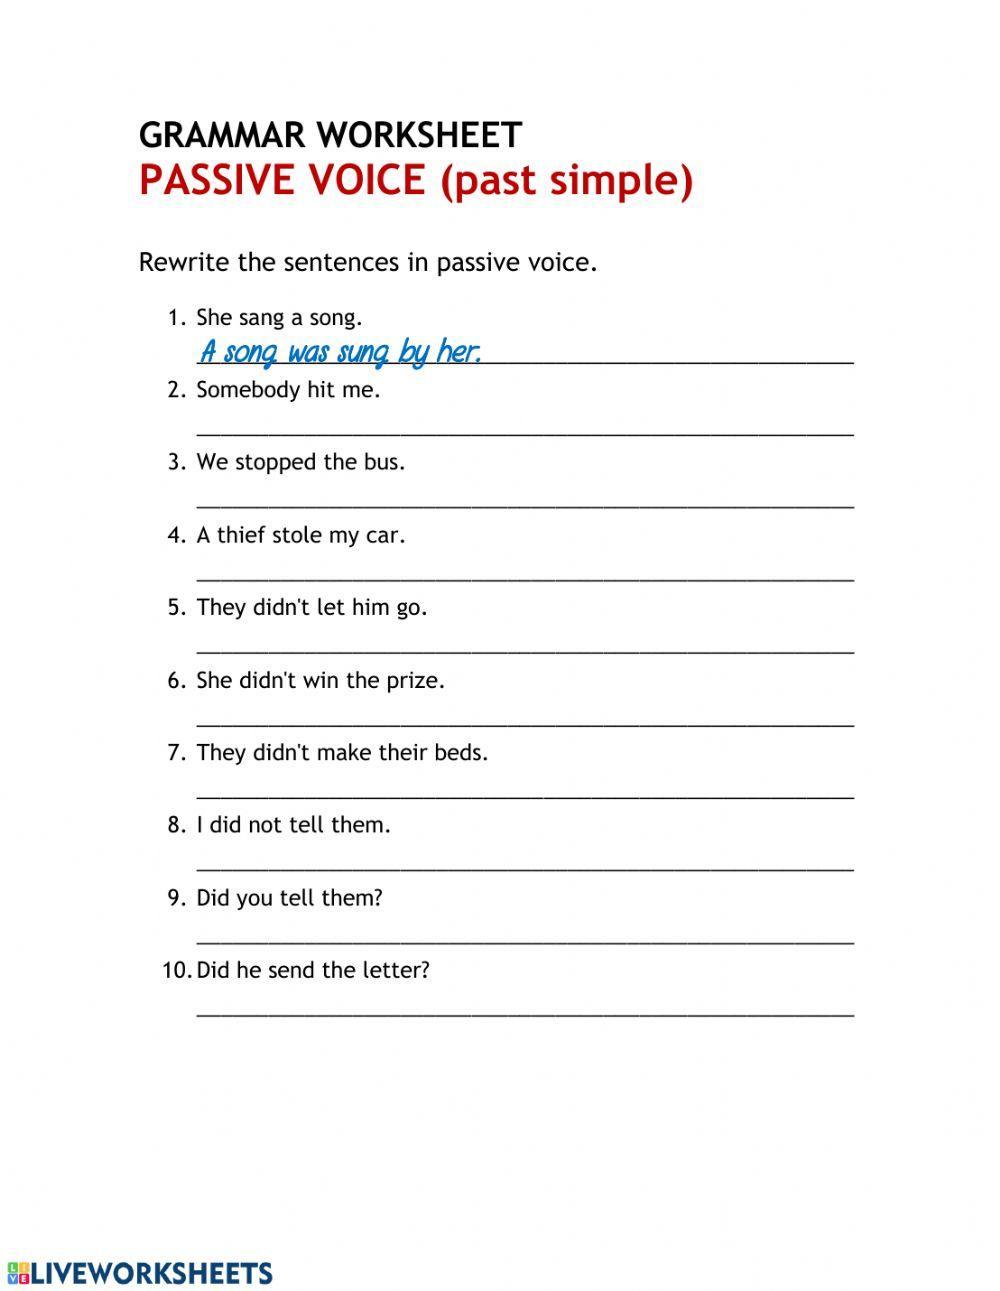 Passive Voice: Past Simple